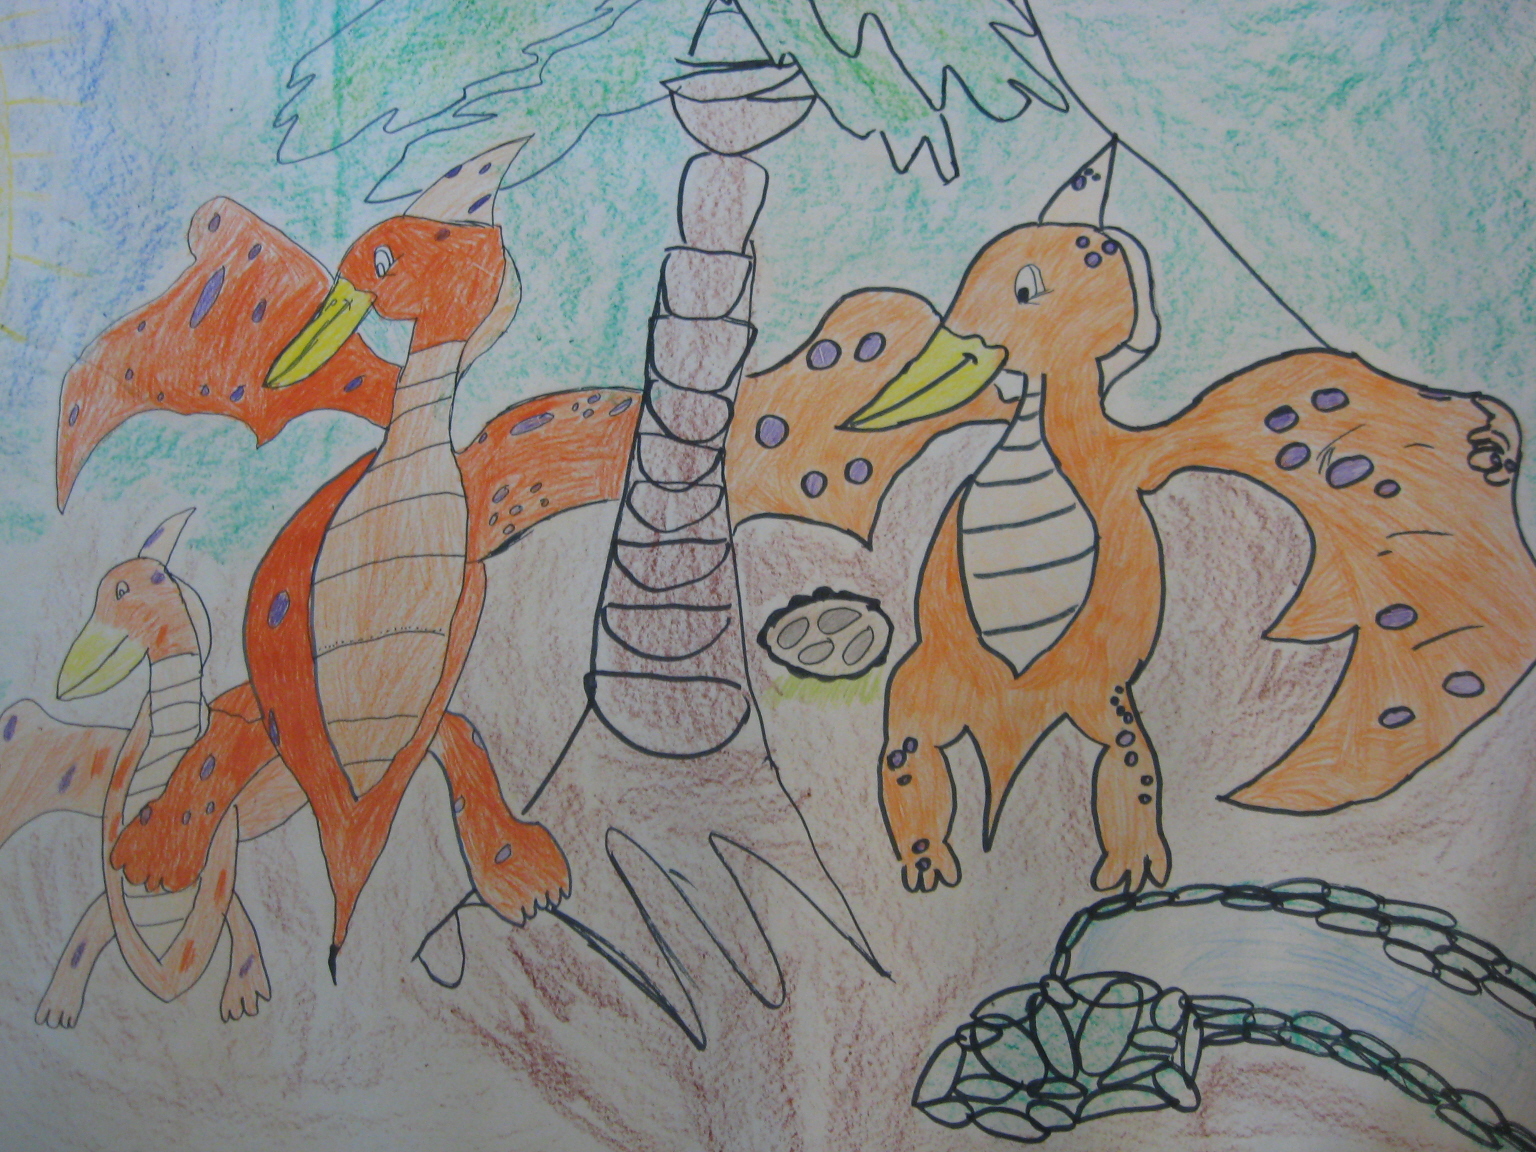 Putování s dinosaury